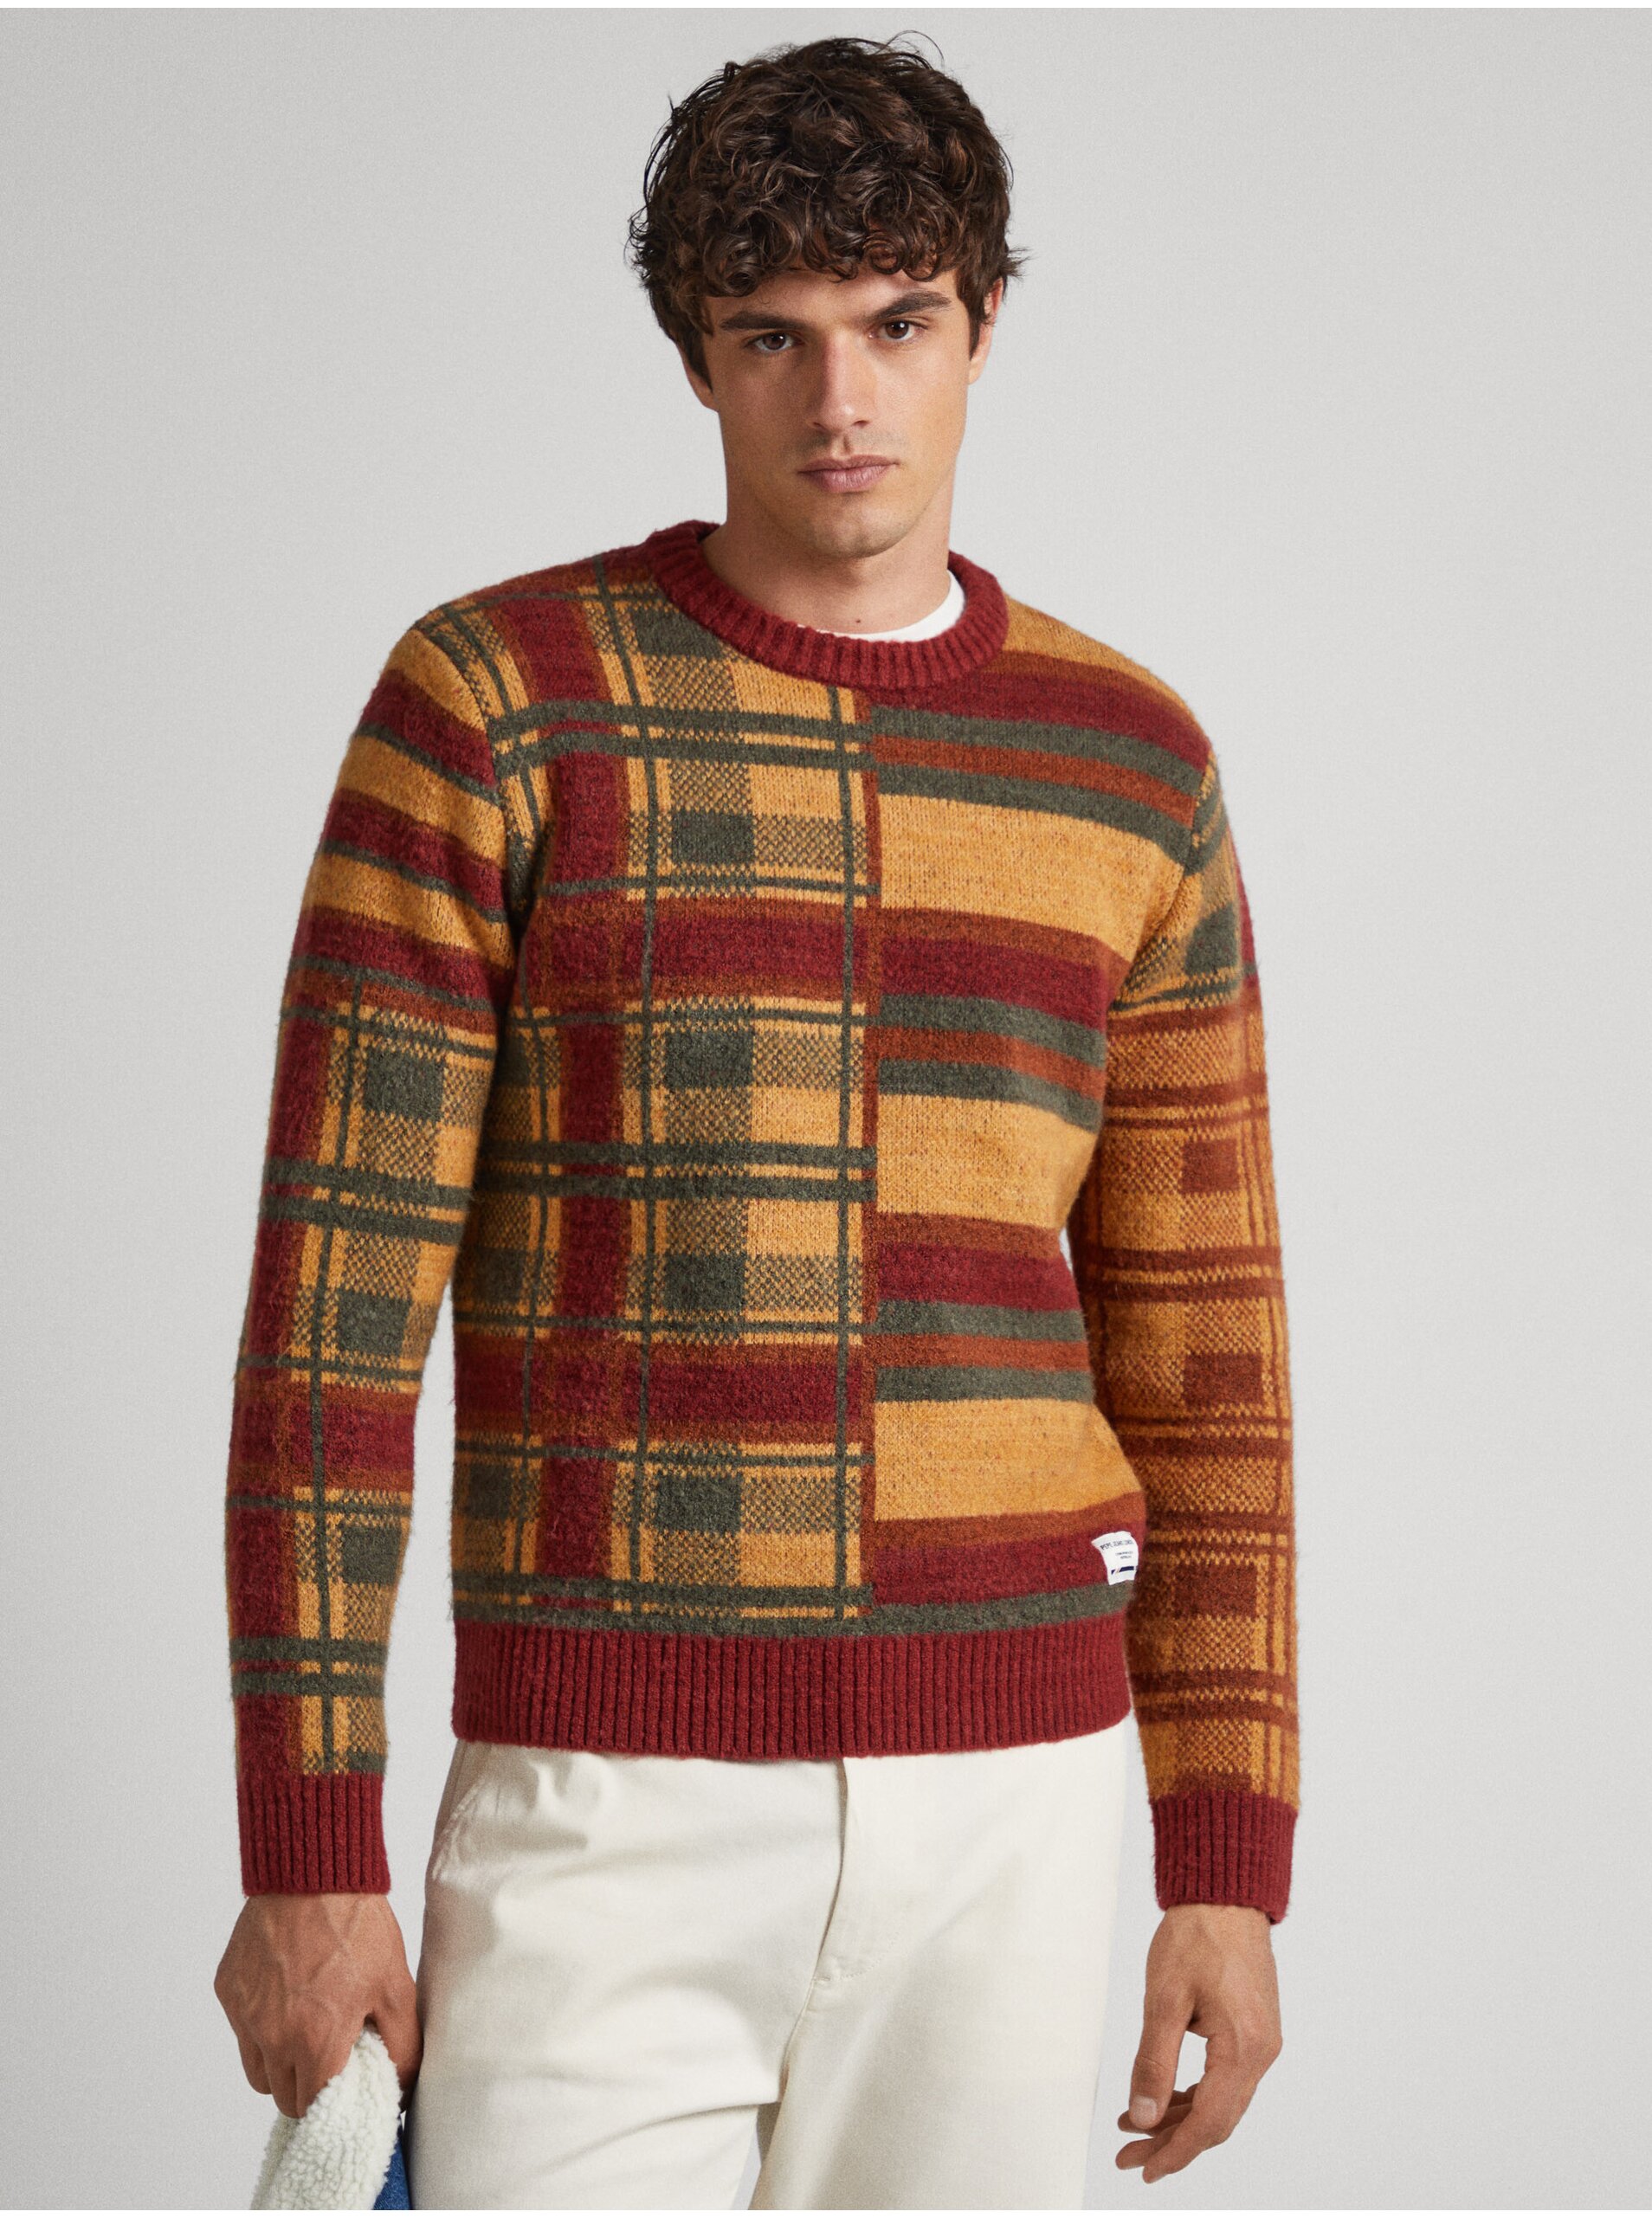 Men's Brick Patterned Sweater Pepe Jeans Stenet - Men's